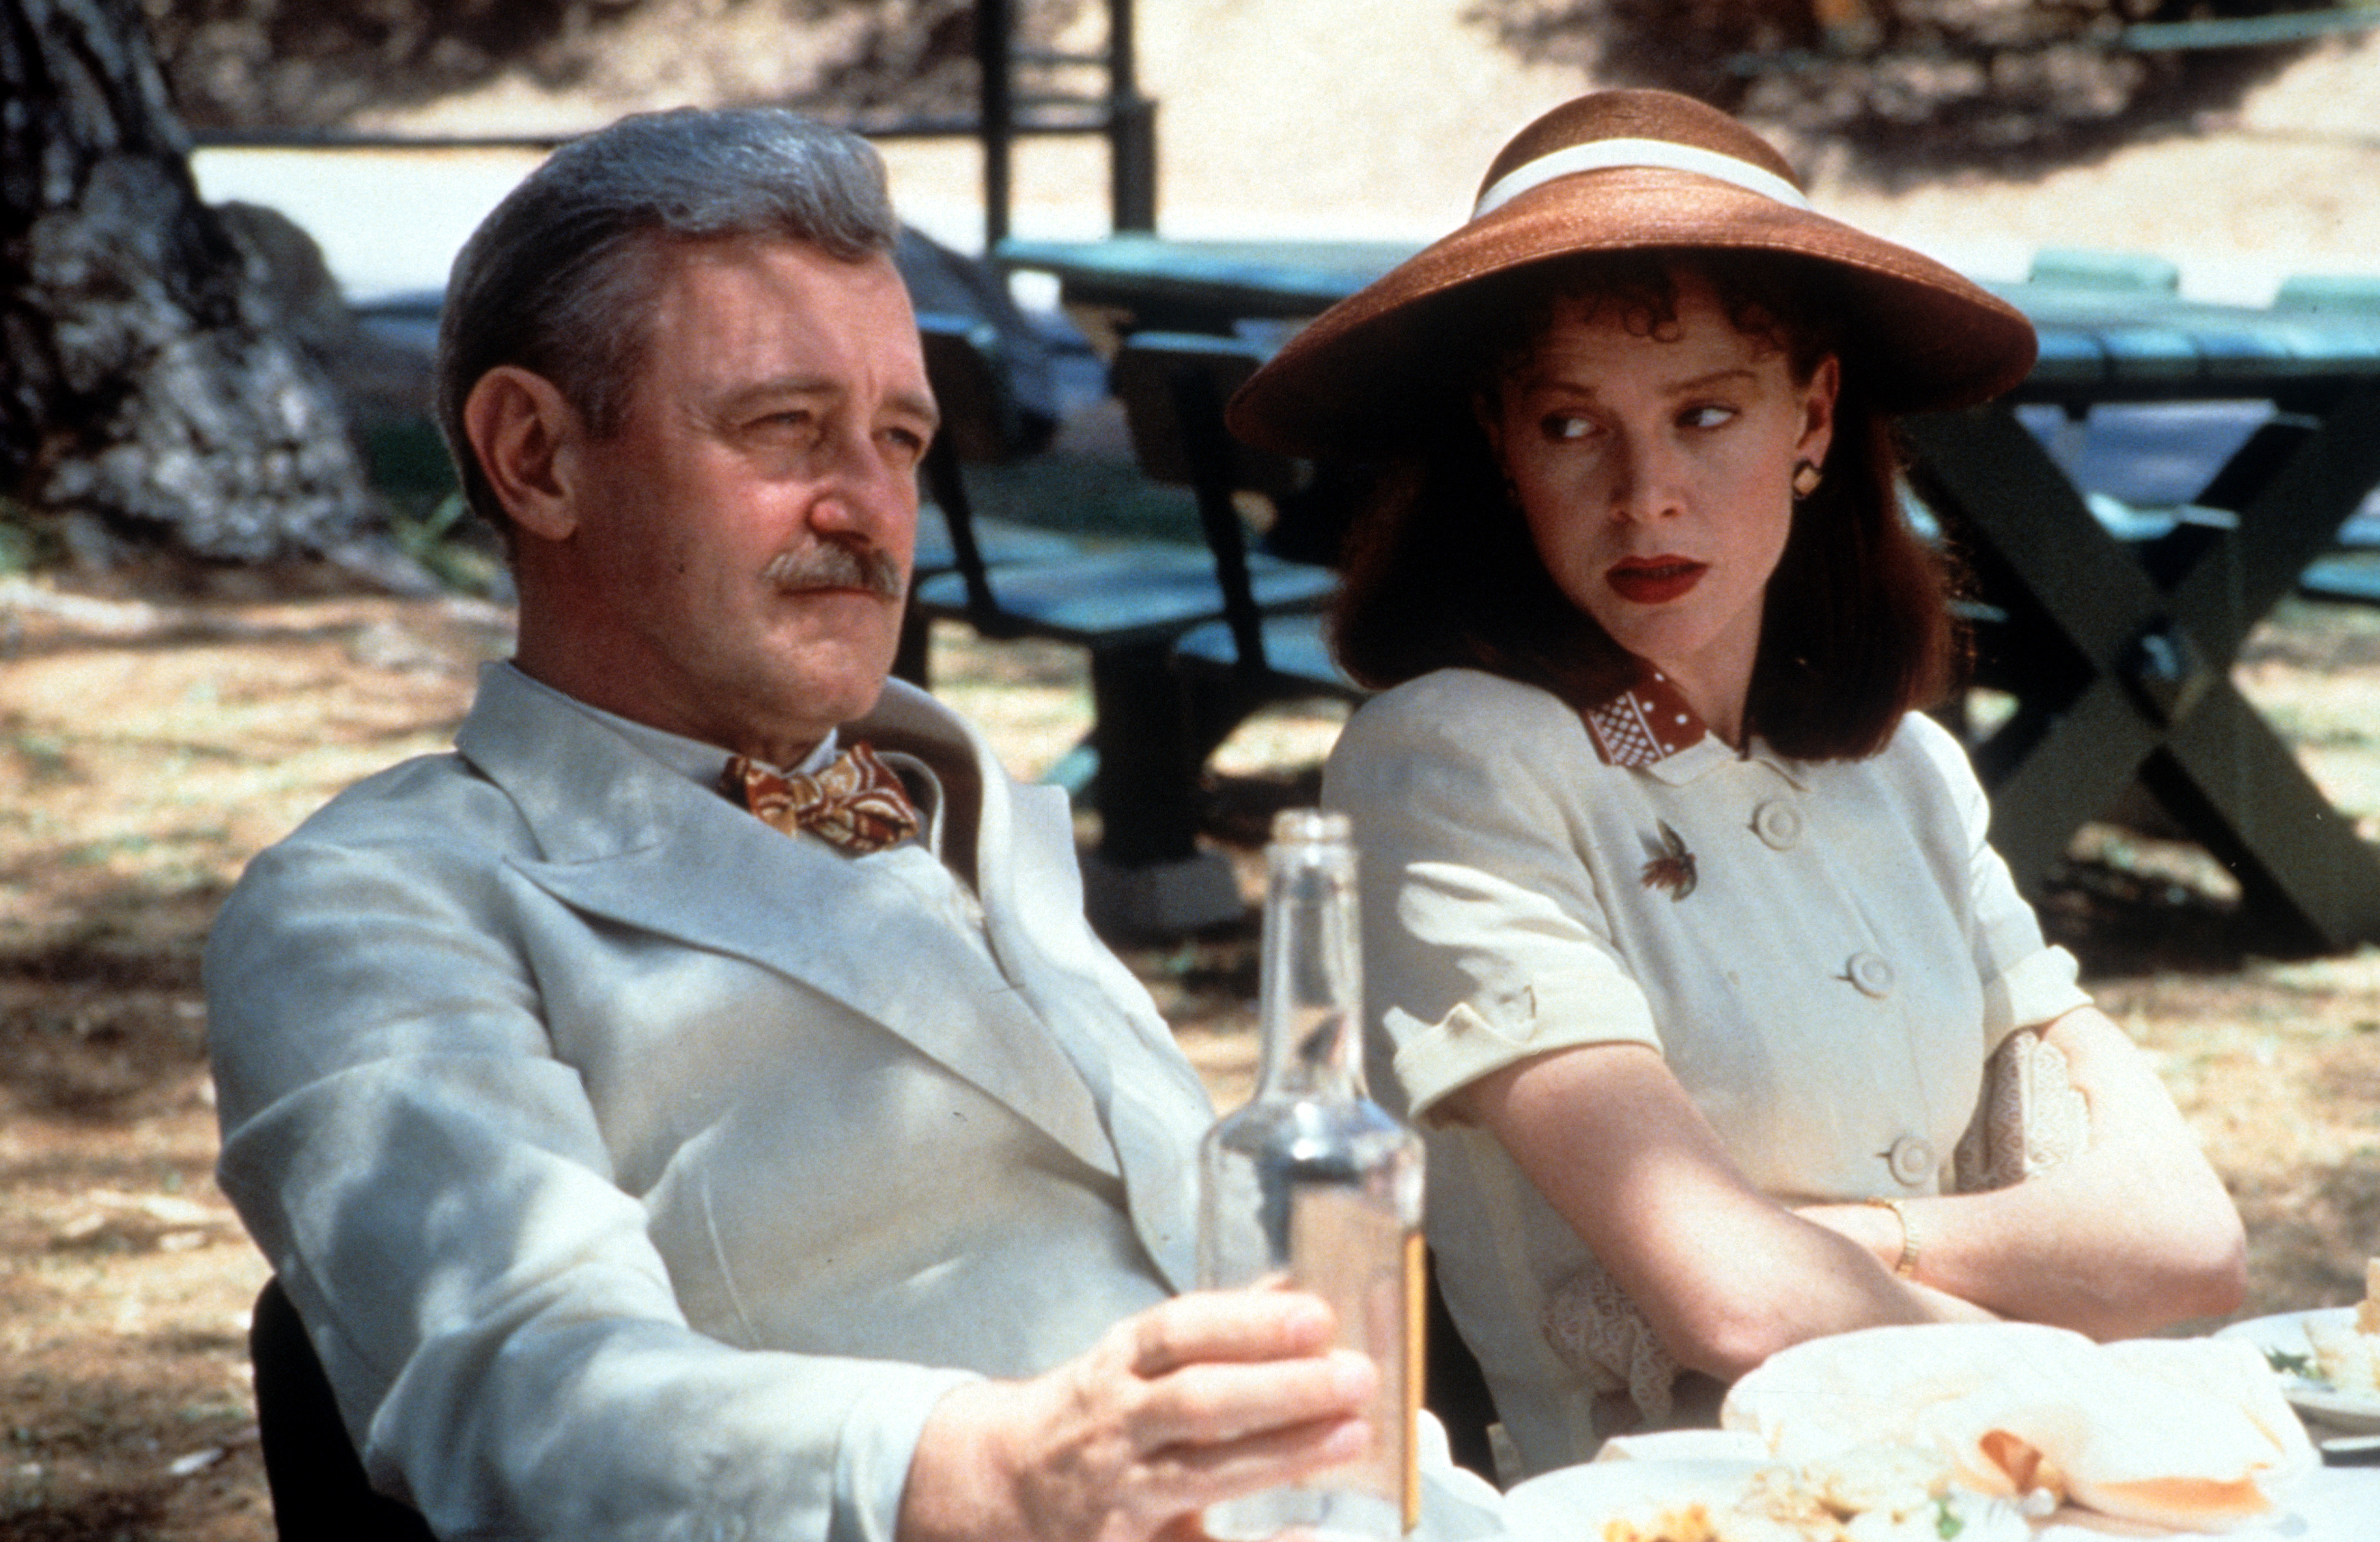 Still of Judy Davis and John Mahoney in Barton Fink (1991)